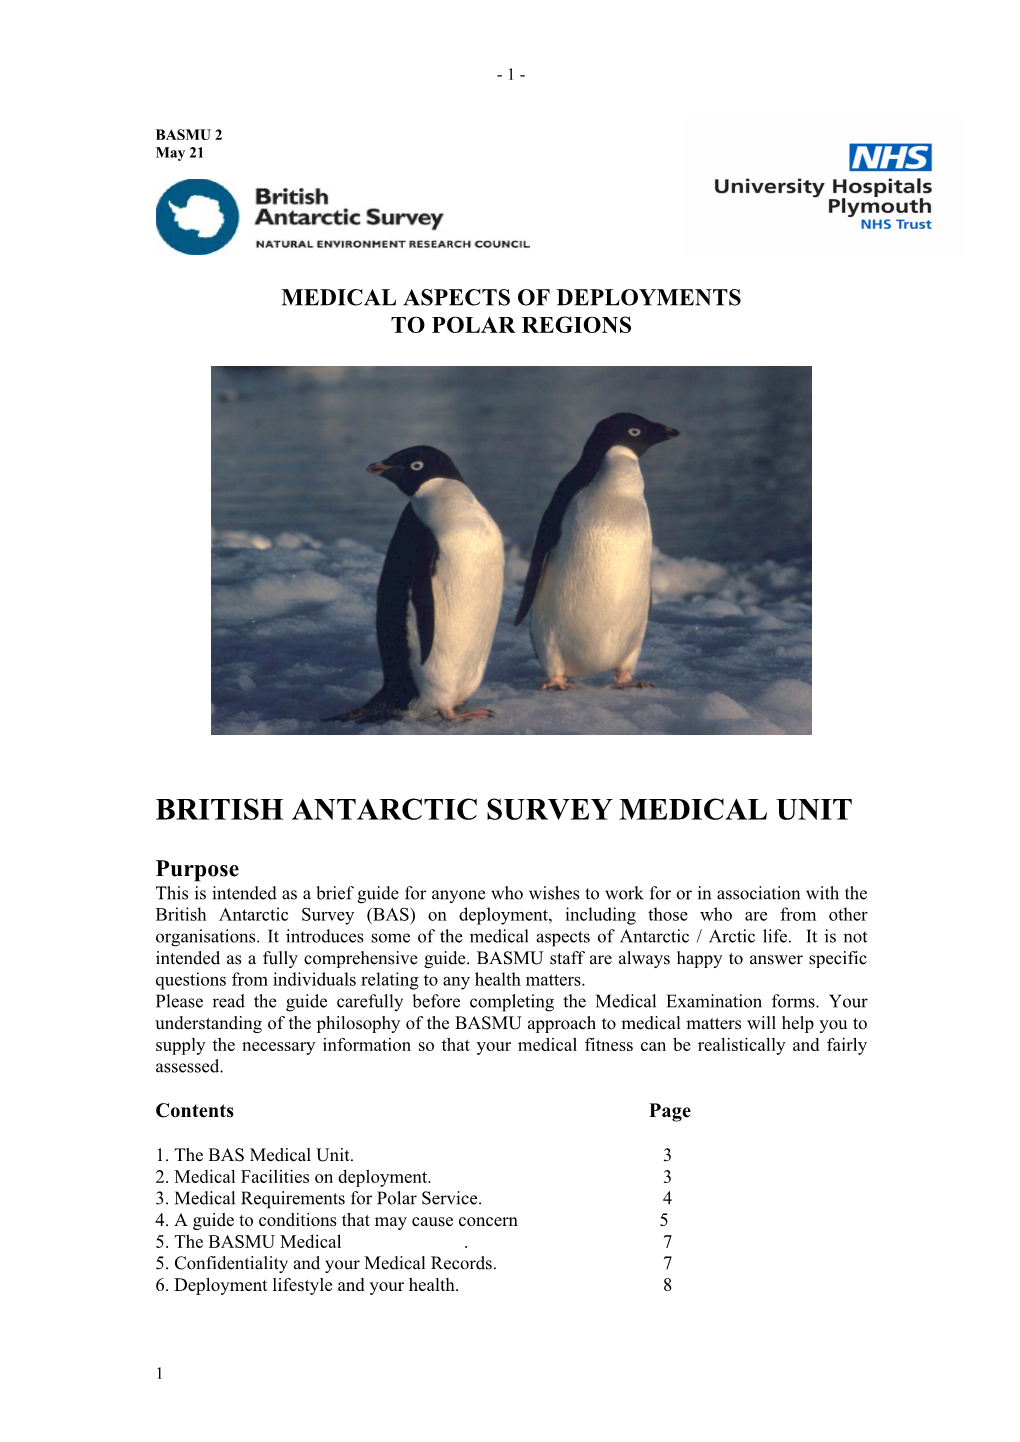 British Antarctic Survey Medical Unit